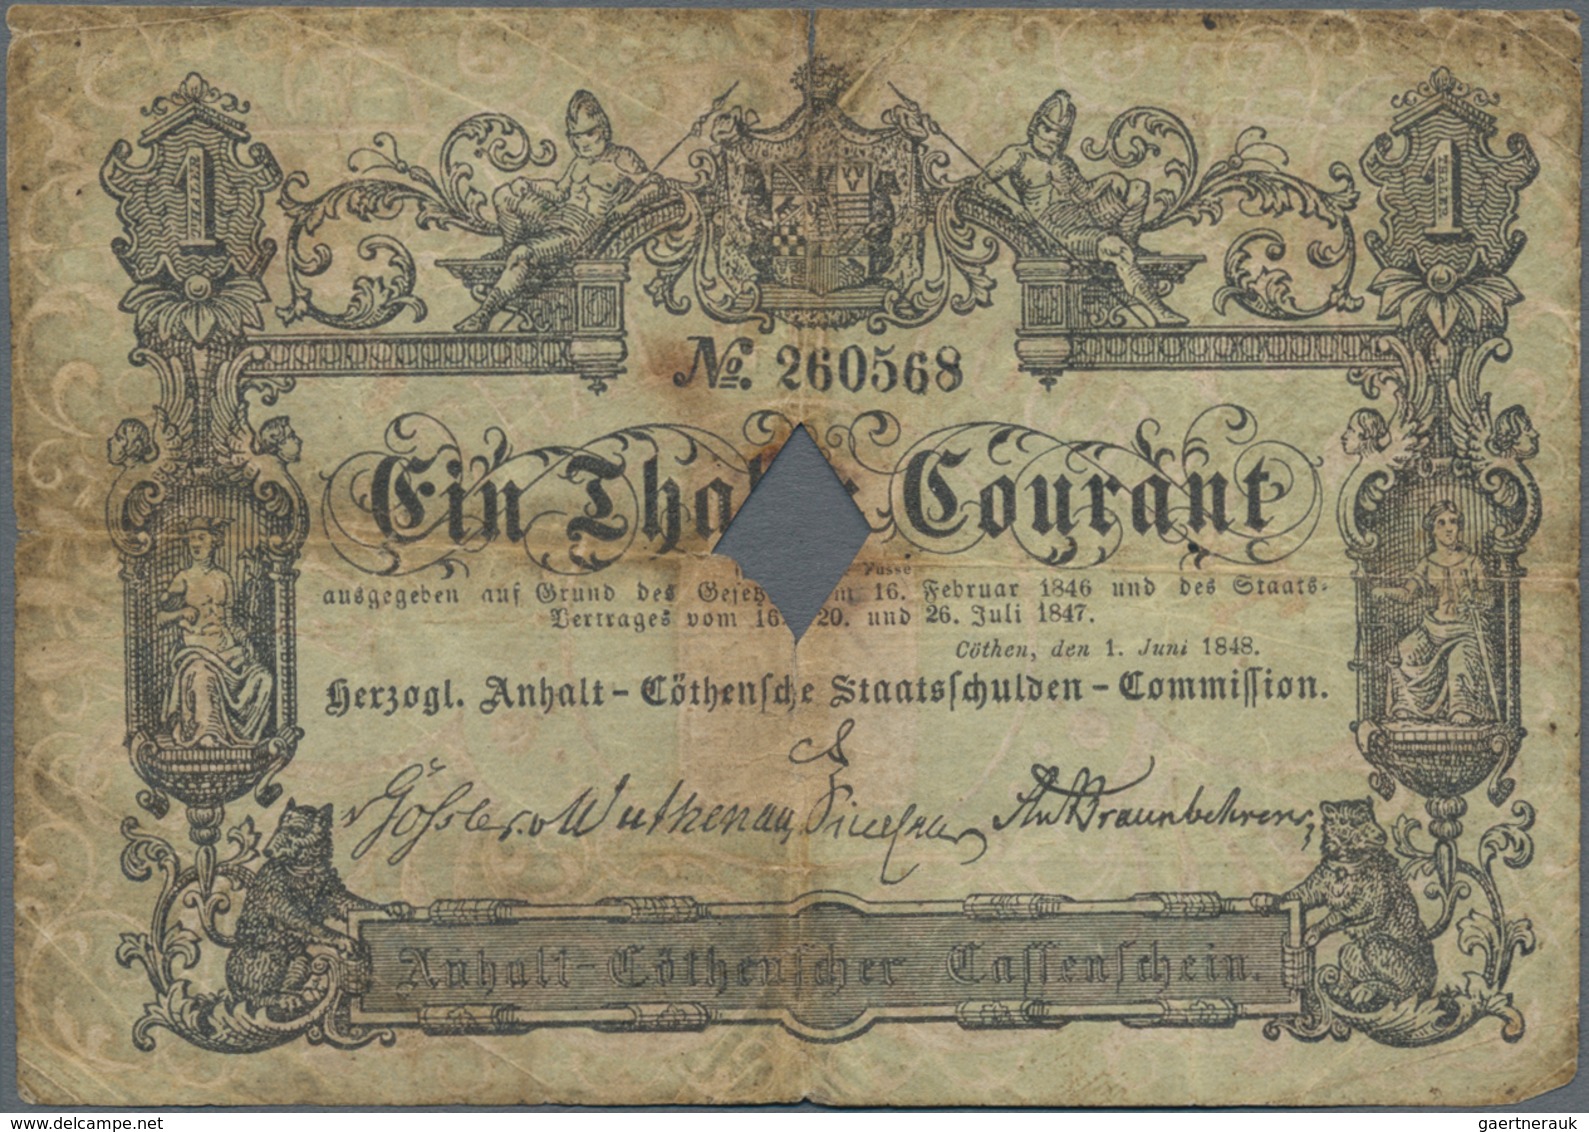 Deutschland - Altdeutsche Staaten: Herzogl. Anhalt-Cöthensche Staatsschulden-Commission 1 Thaler 184 - [ 1] …-1871 : Duitse Staten